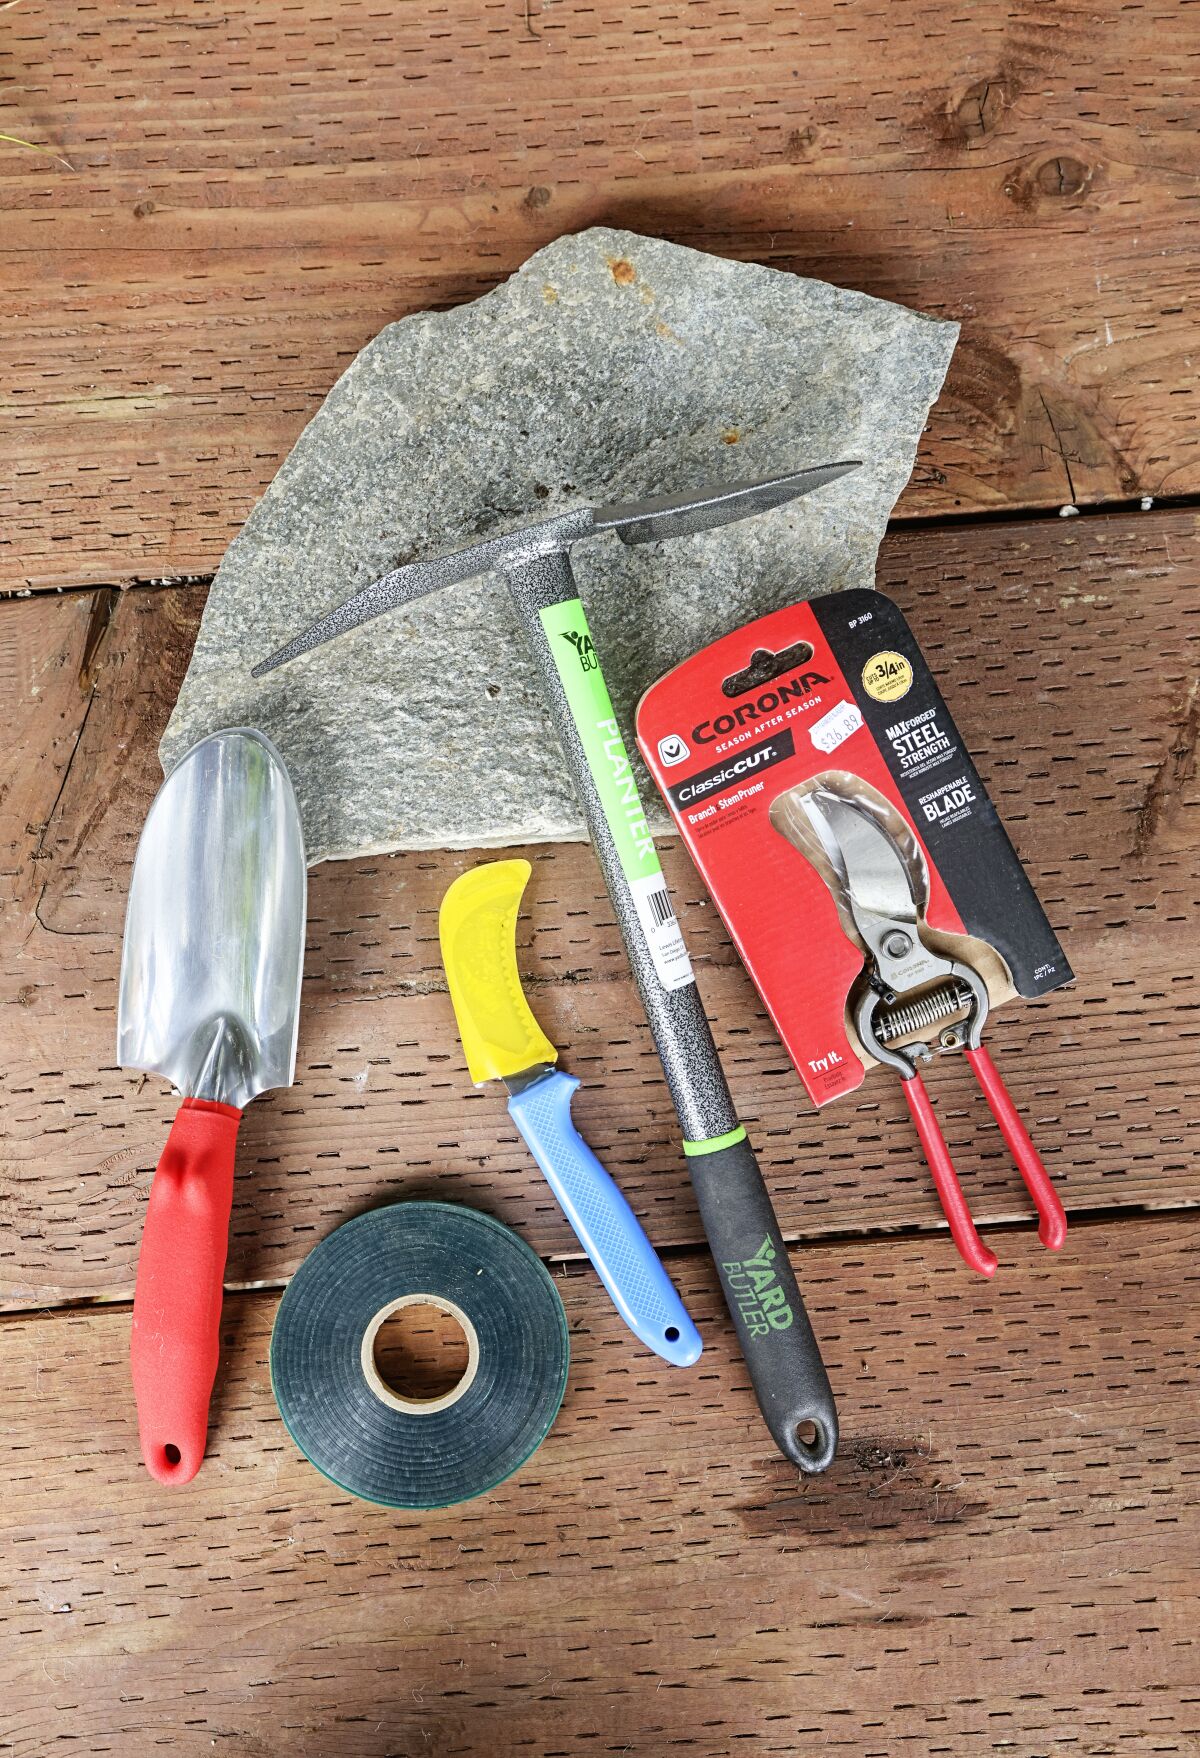 A garden trowel, tie tape, harvesting blade, maddock and pruner.